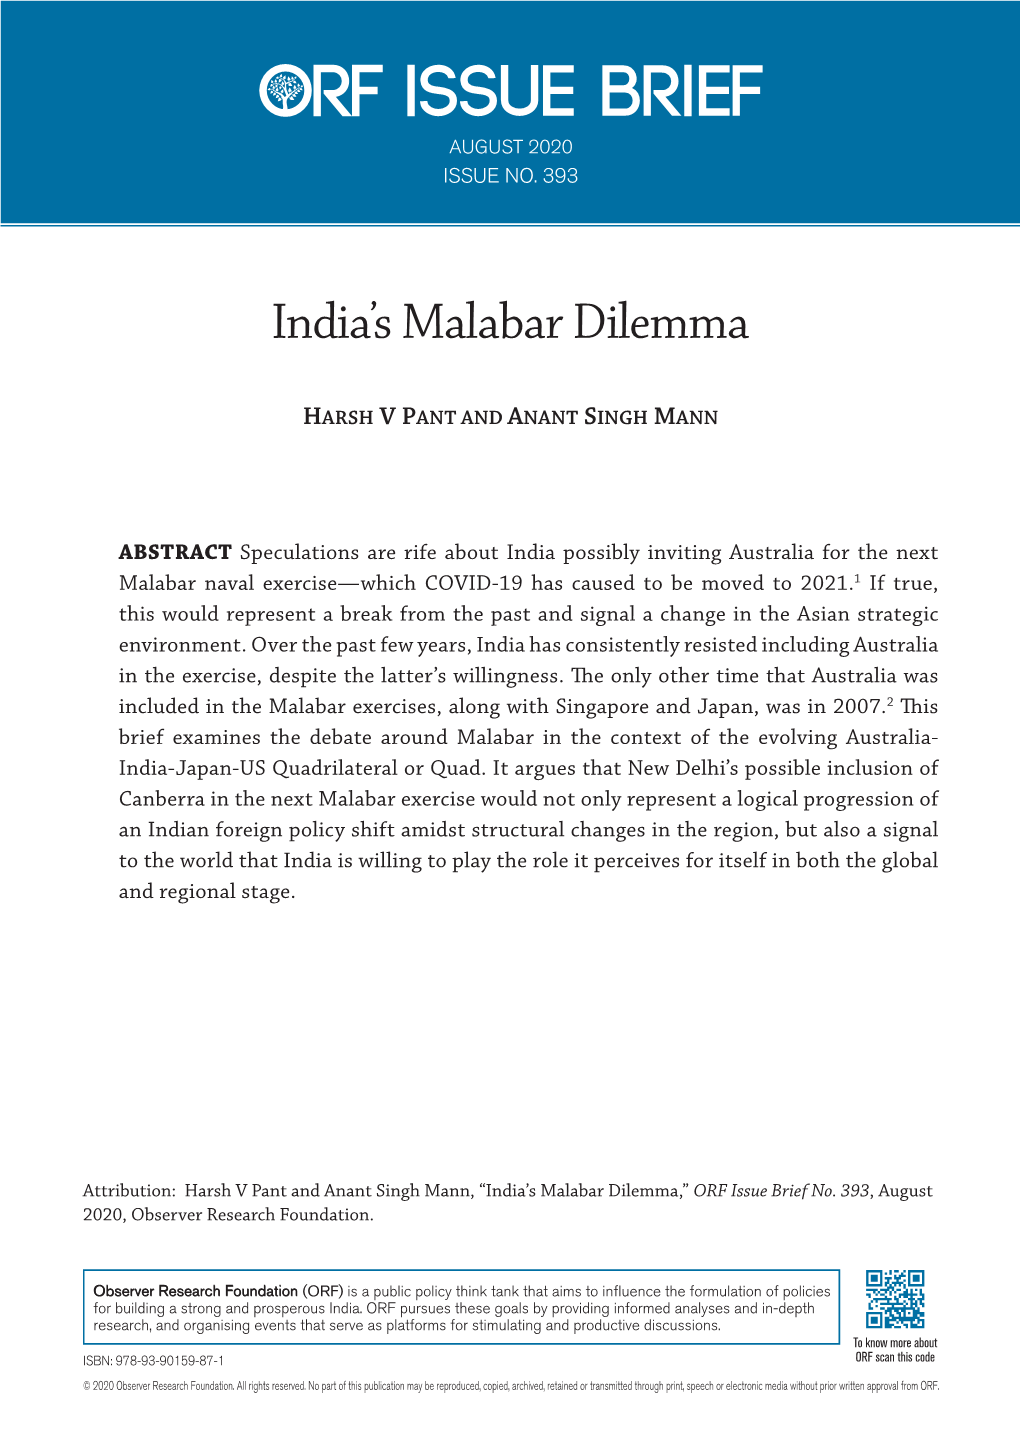 India's Malabar Dilemma